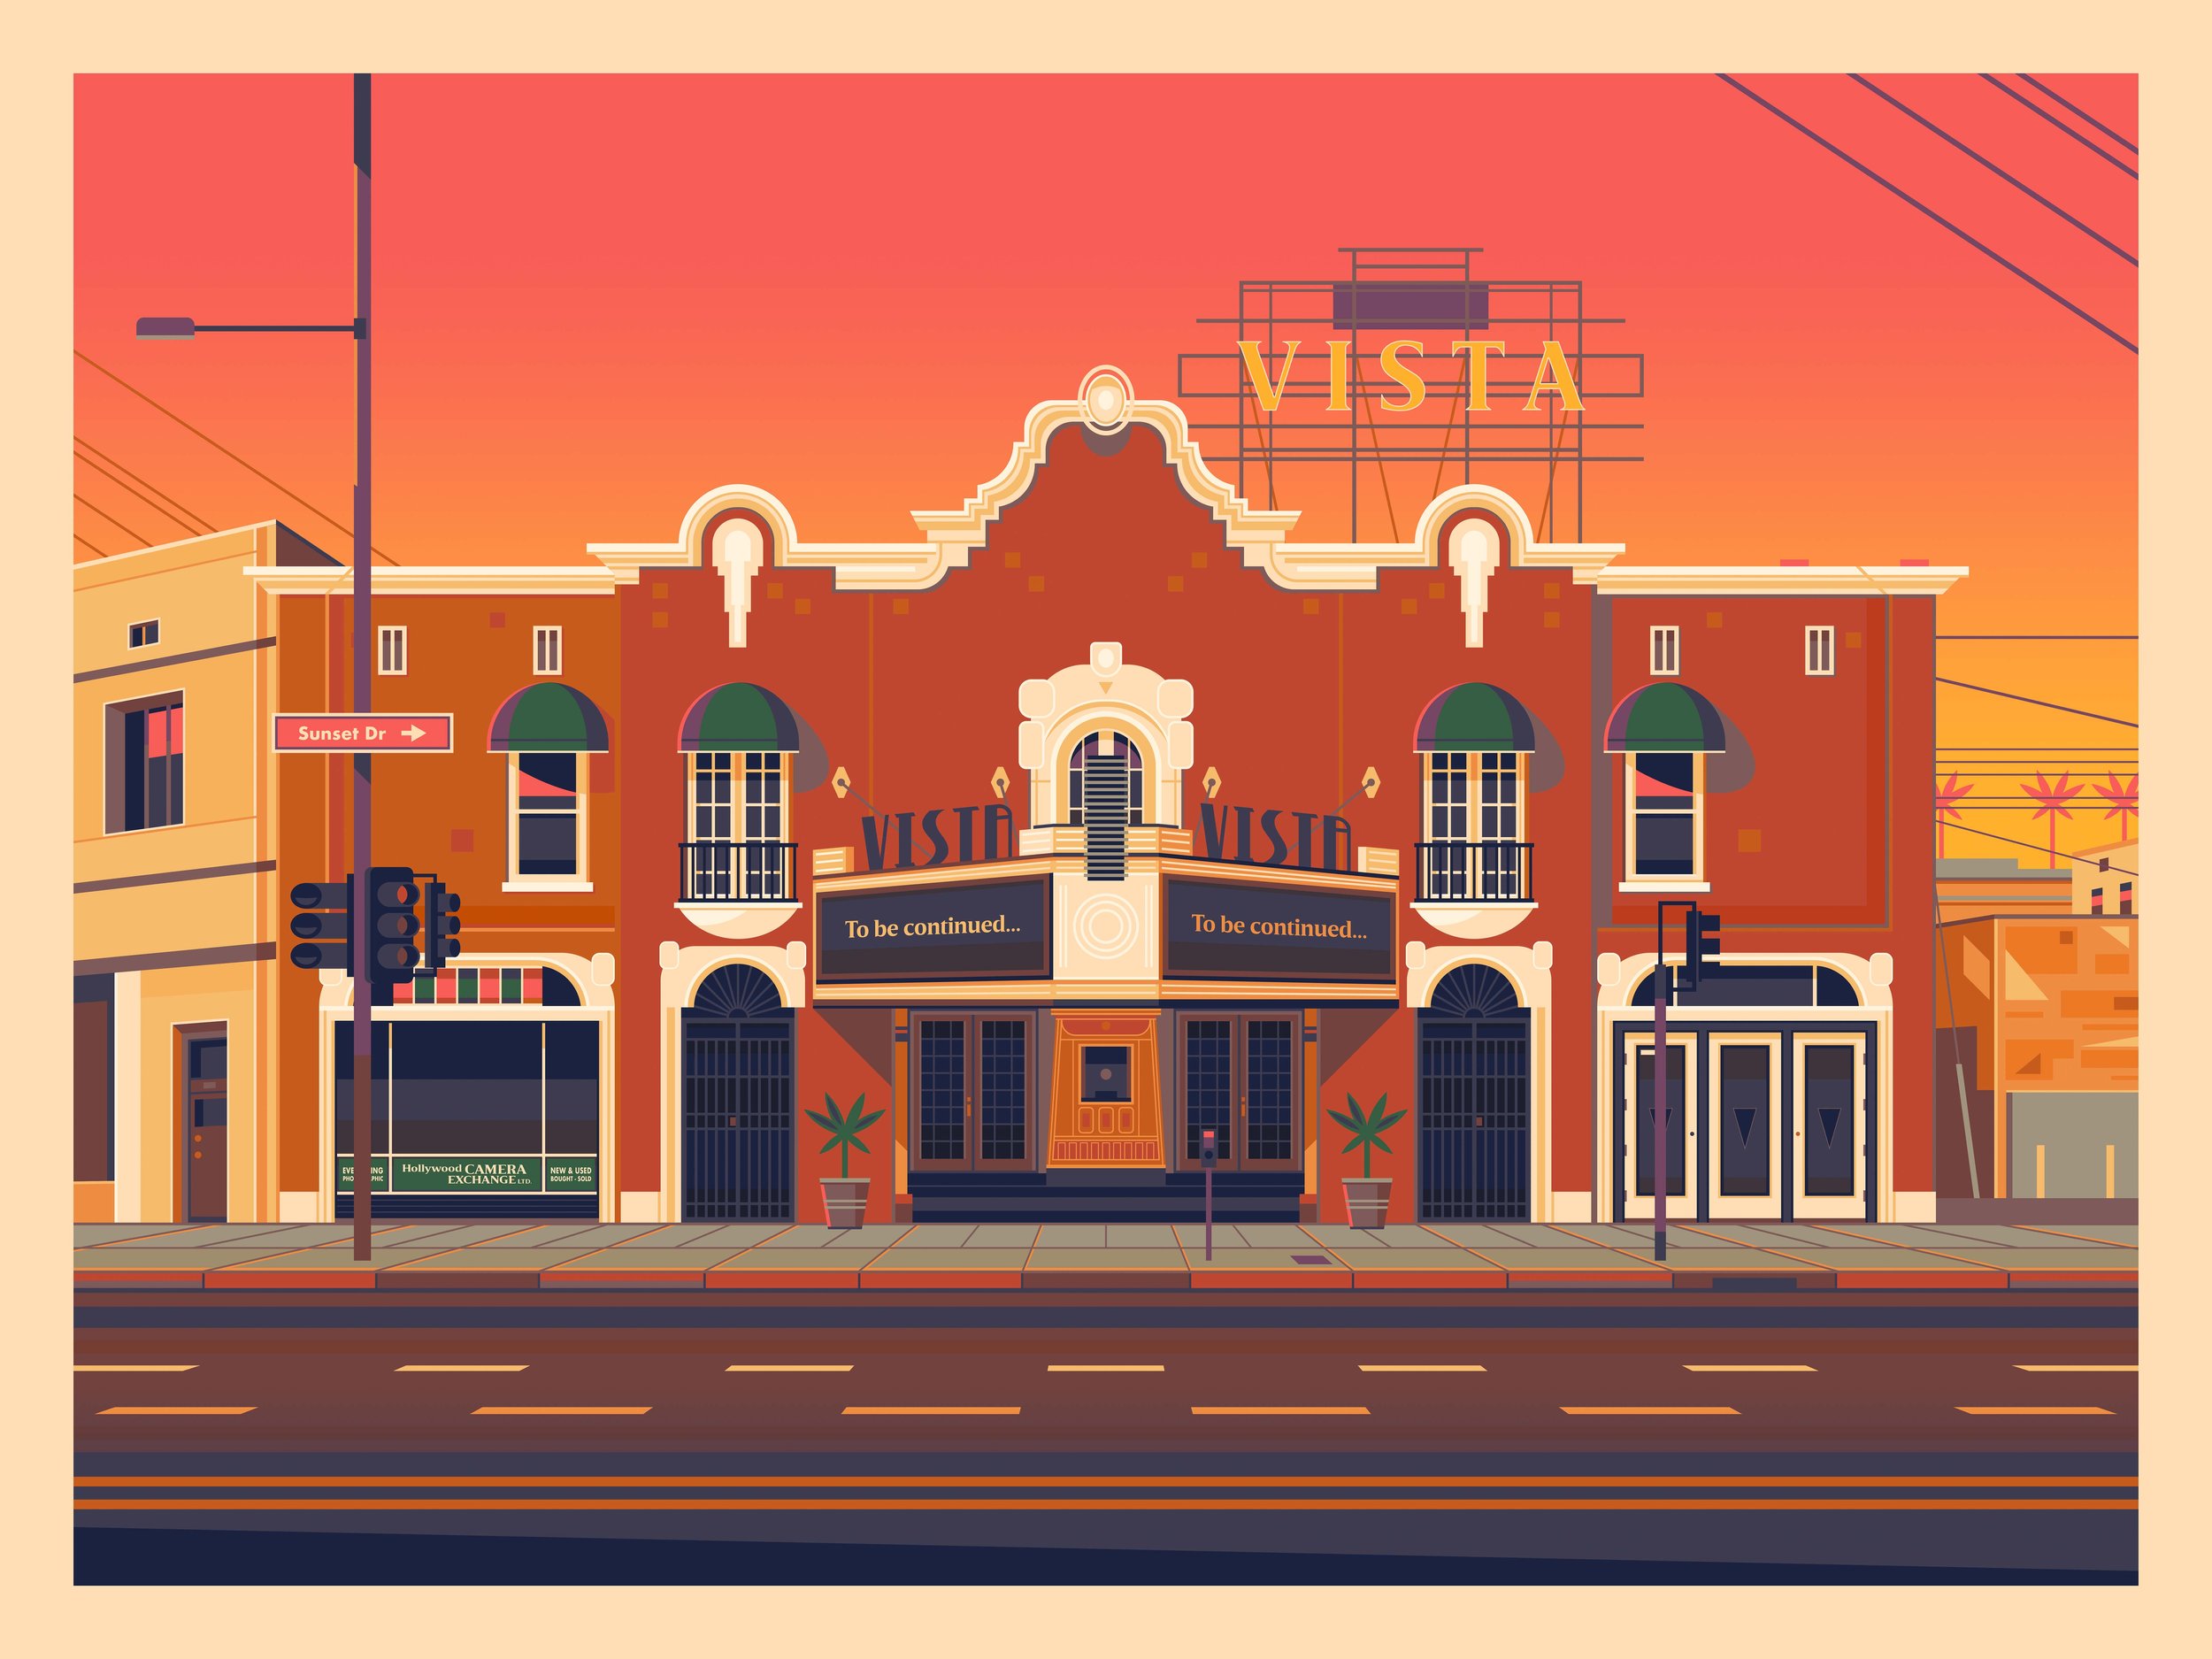 Vista Theatre (Variant)